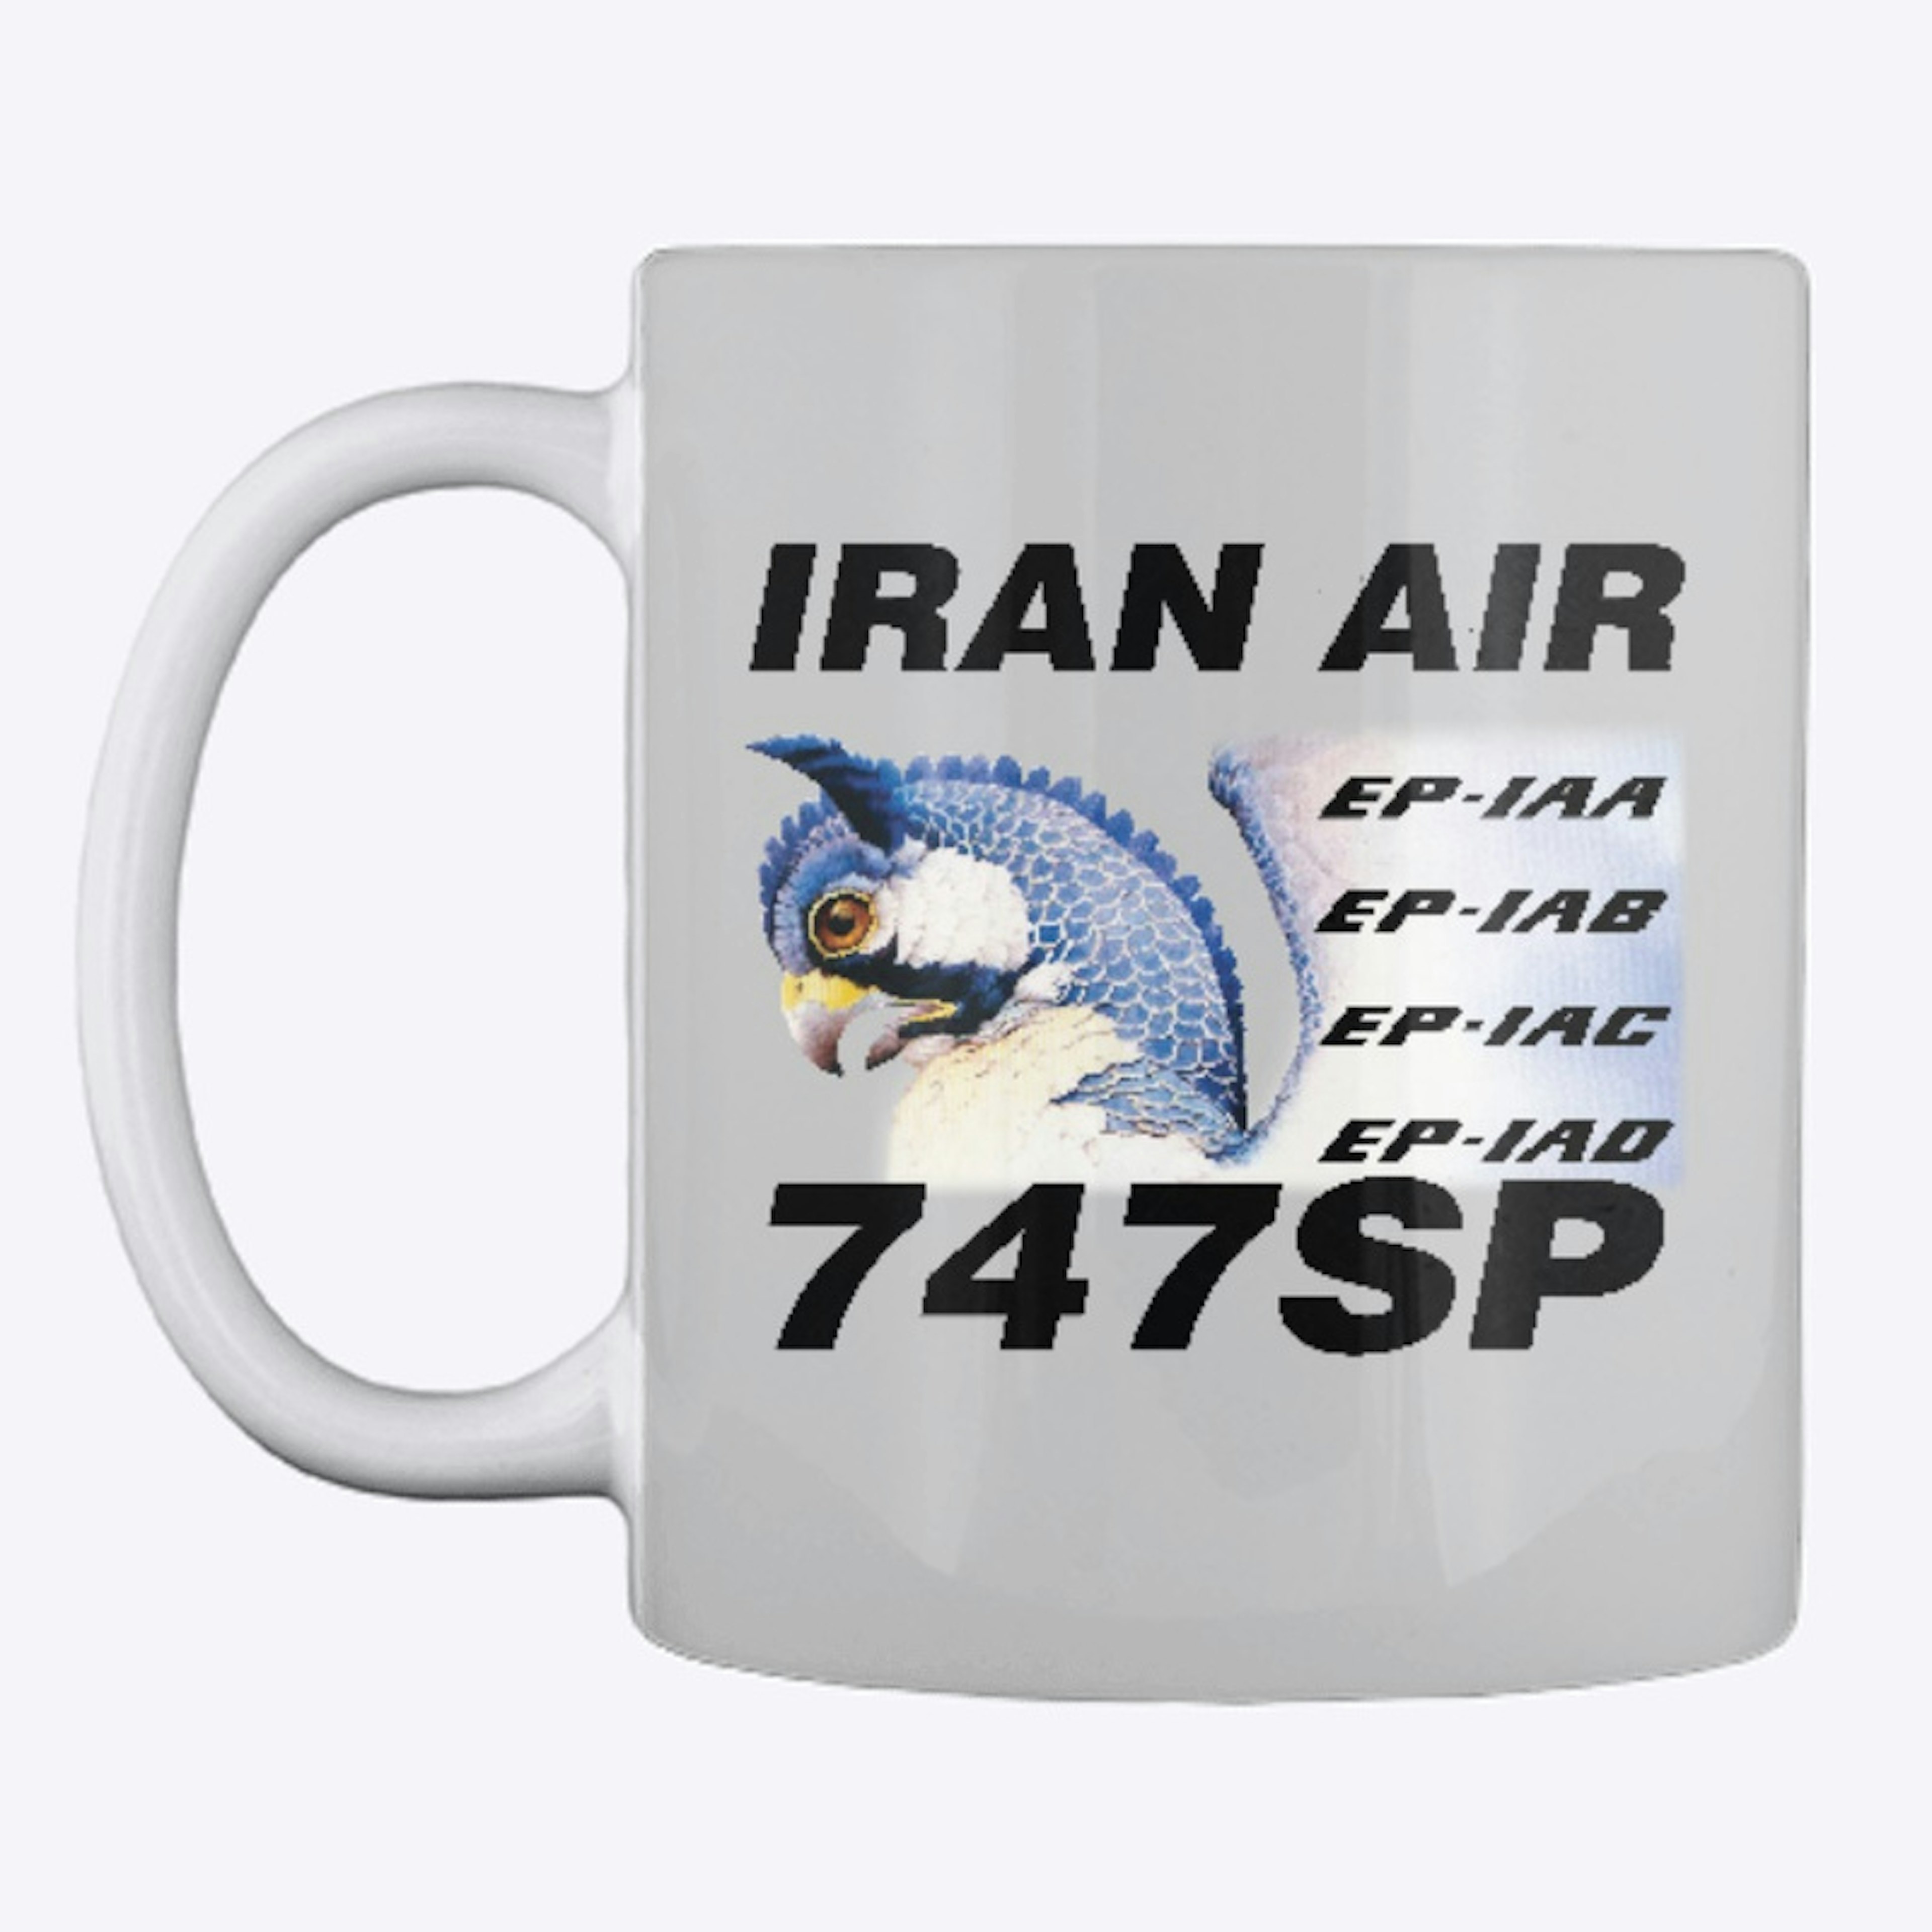 Iran Air 747SP - Homa